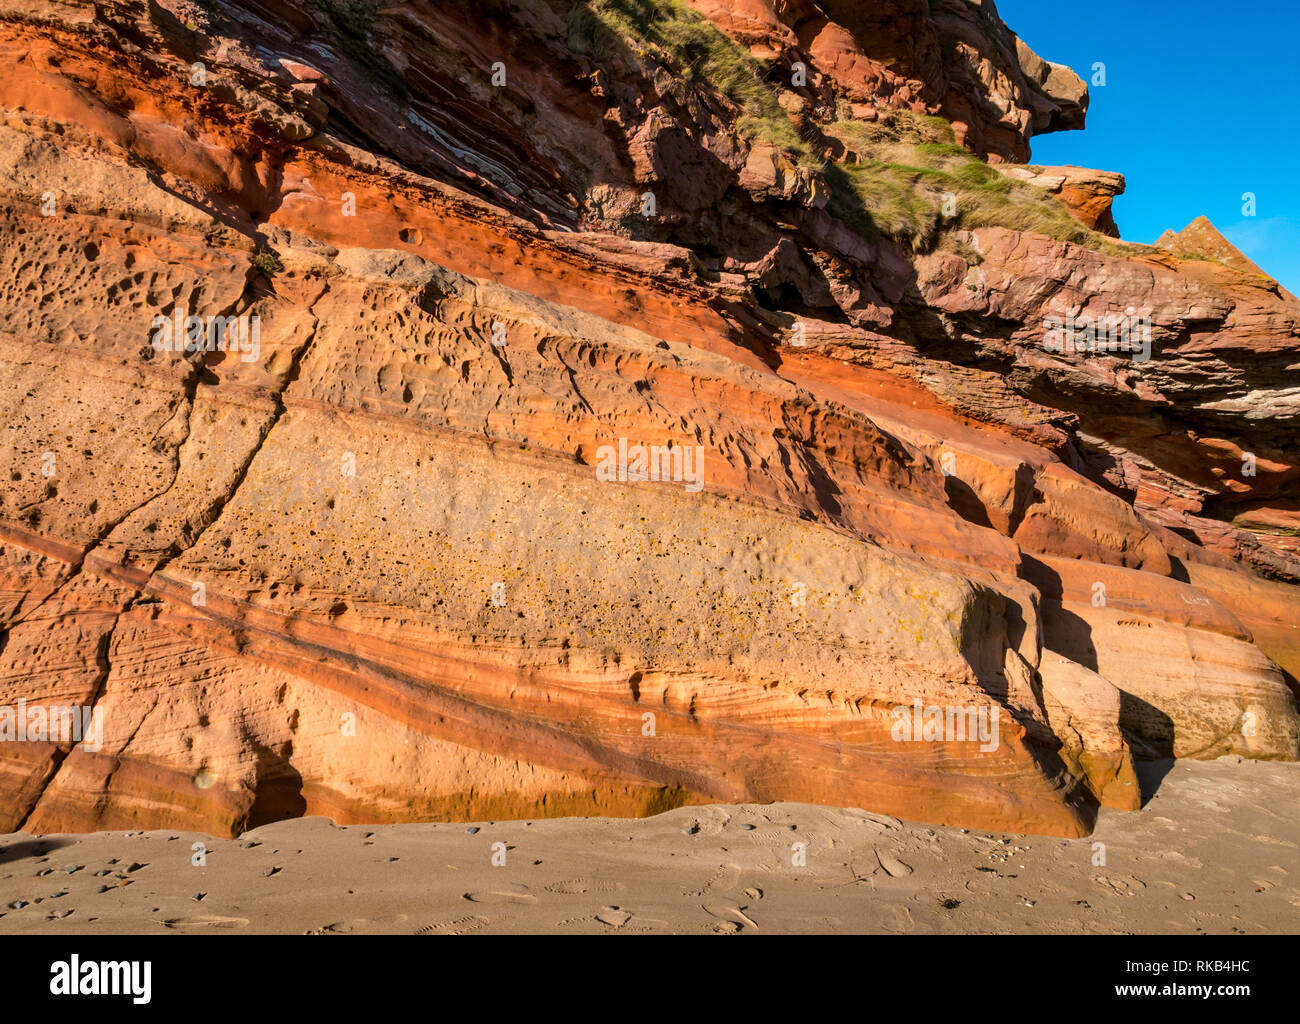 Devoniano capas sedimentarias estratos de roca arenisca en acantilado, hierro coloración, Pease Bay, Berwickshire, Escocia, Reino Unido Foto de stock